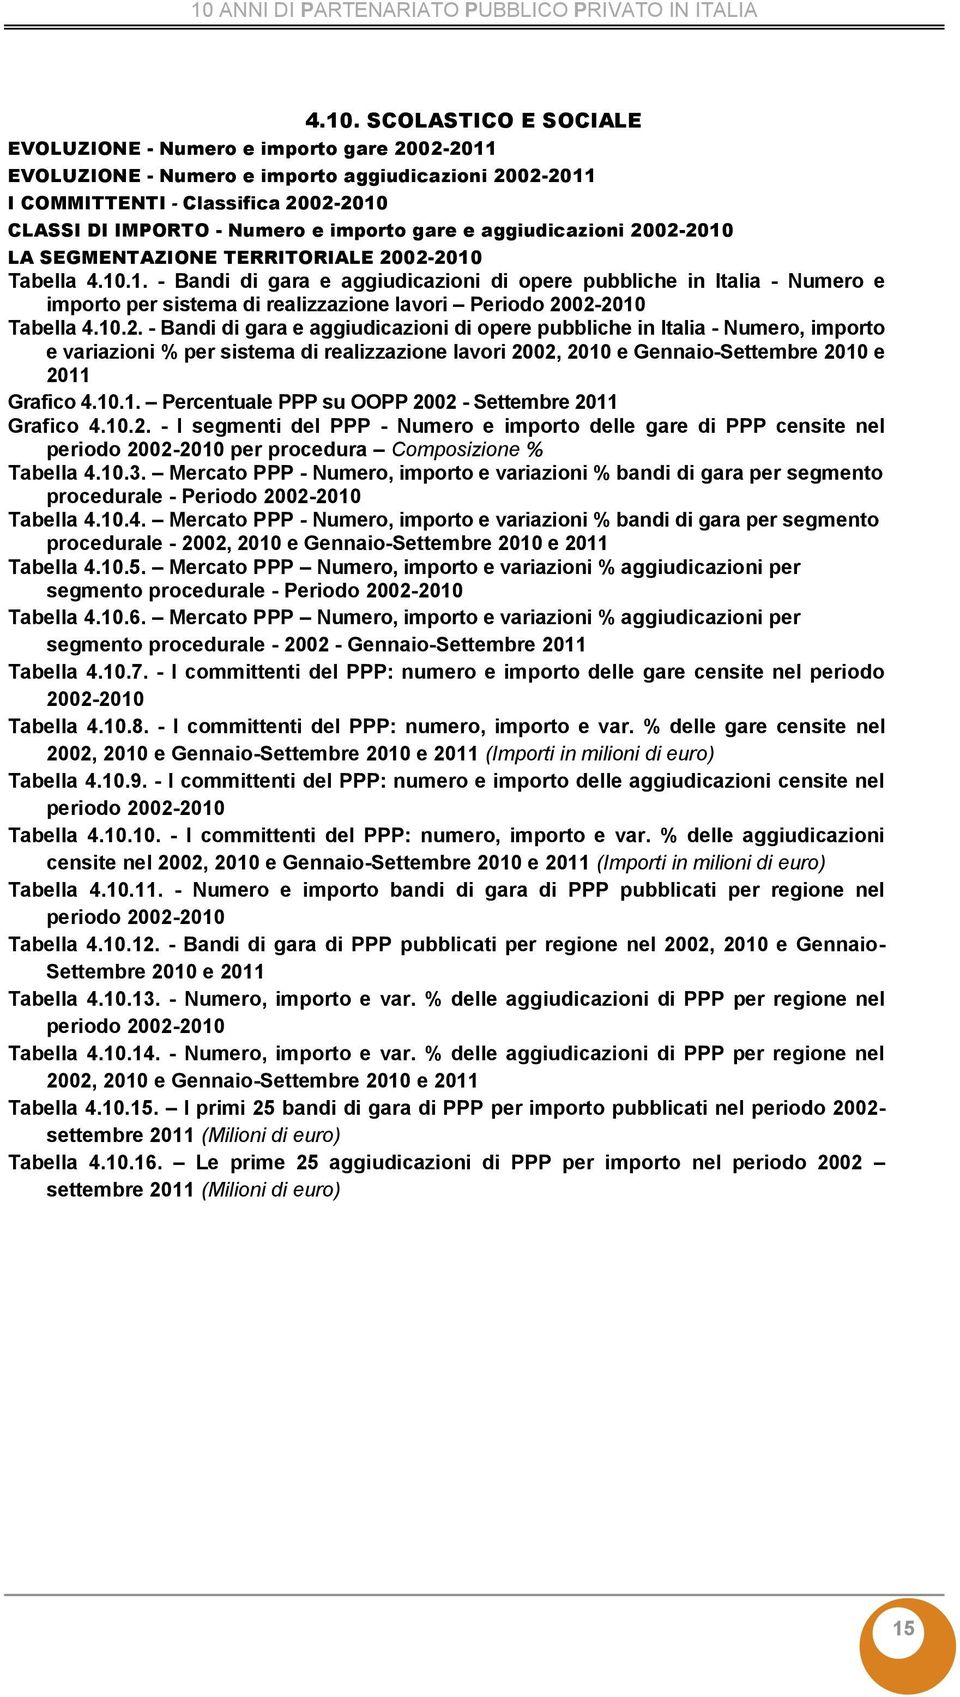 - Bandi di gara e aggiudicazioni di opere pubbliche in Italia - Numero, importo Grafico 4.10.1. Percentuale PPP su OOPP 20